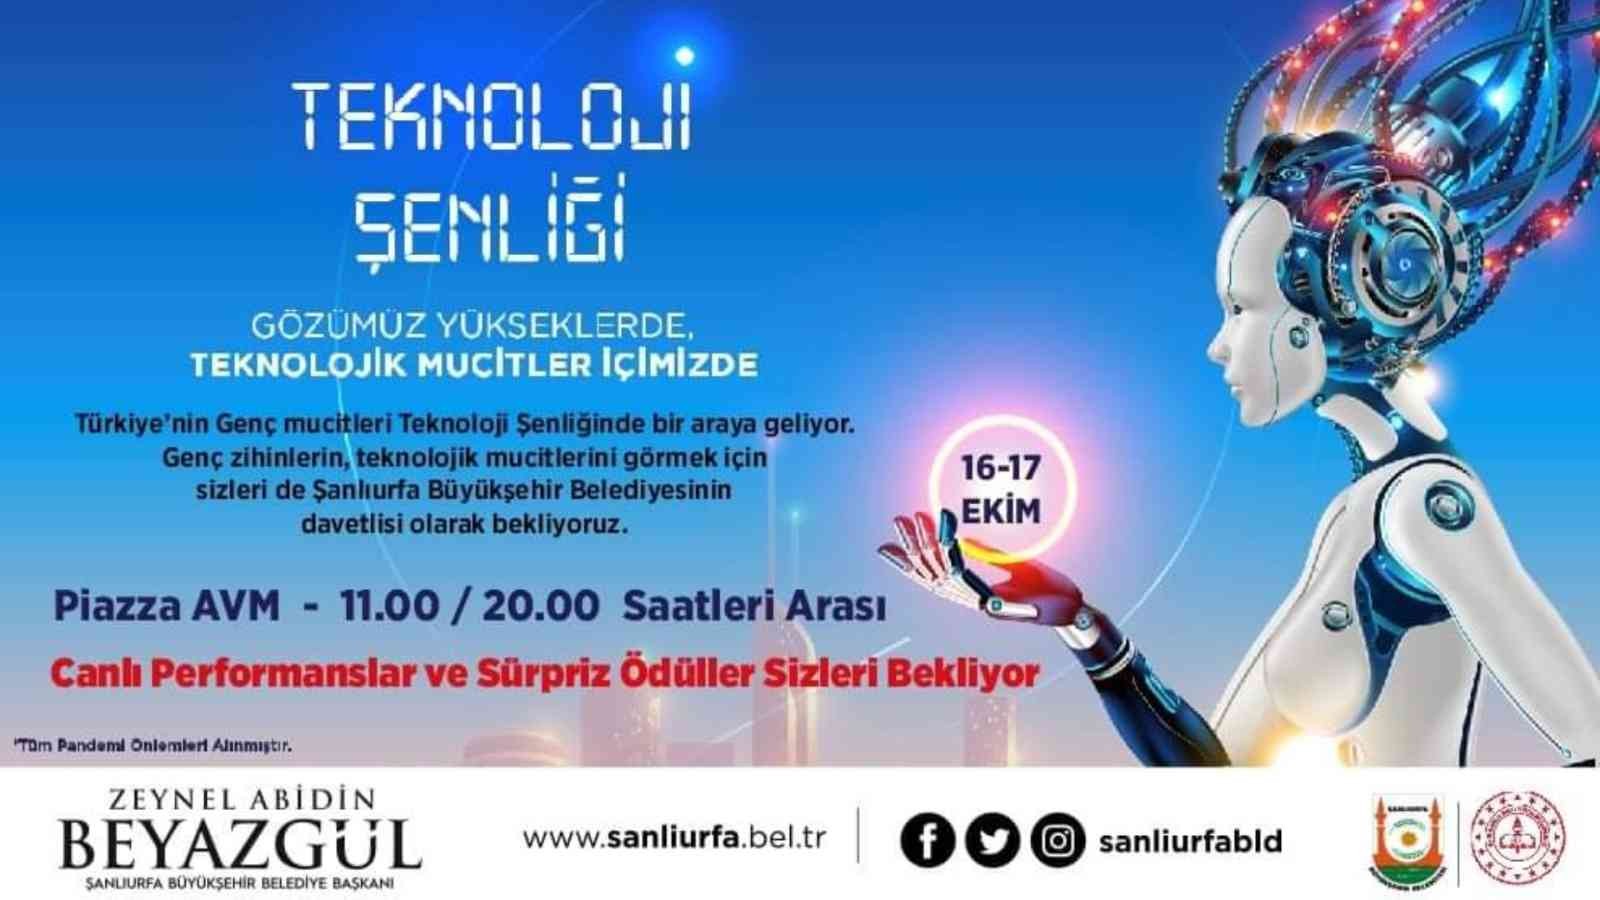 Şanlıurfa’da Teknoloji Şenliği düzenlenecek #sanliurfa